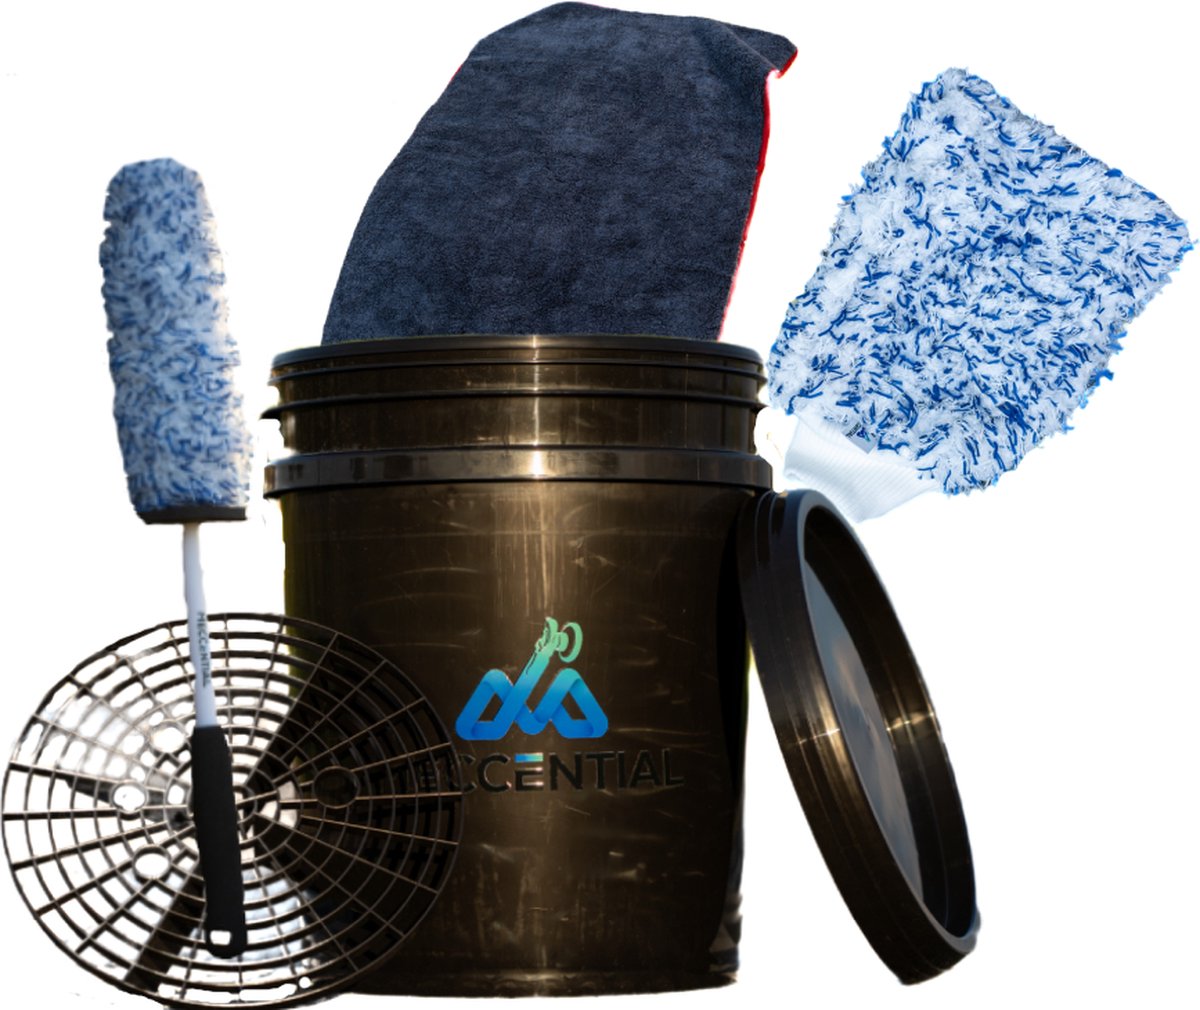 Meccential Voordeel Pakket - Korting - Besparen - WasPakket - VIER essentiële producten - Drying Towel - 1200GSM - Wheel Woolie - Wheel Brush - Bucket - Bucket Gridguard - 20L Bucket - MicroFiber - Washing mitt - Washandschoen